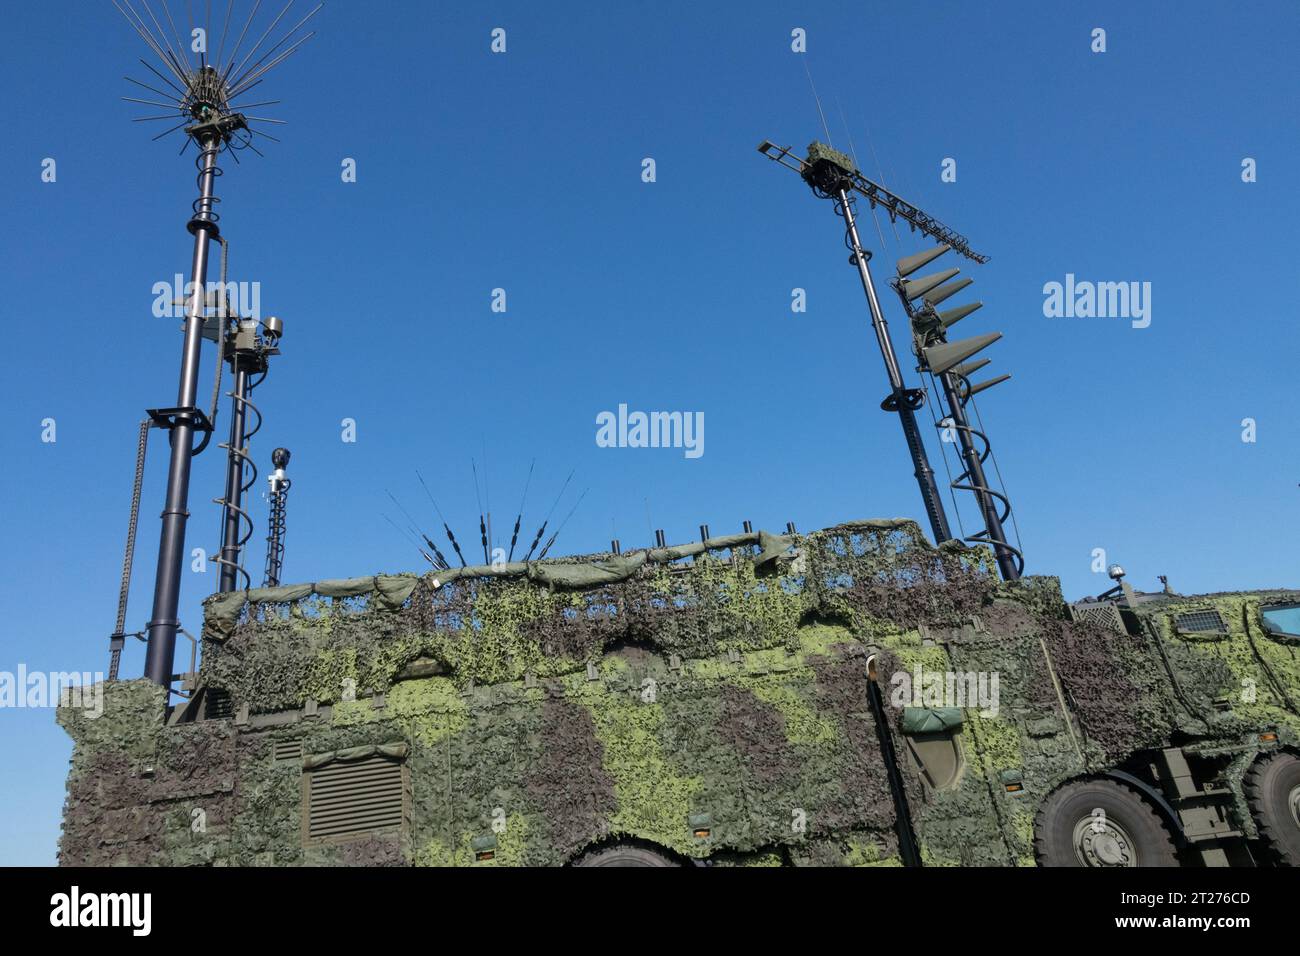 STARKOM guerre électronique blindée, militaire, brouilleurs, guerre électronique, GE, brouilleur de communication tactique, antennes, équipement de l'armée tchèque Banque D'Images